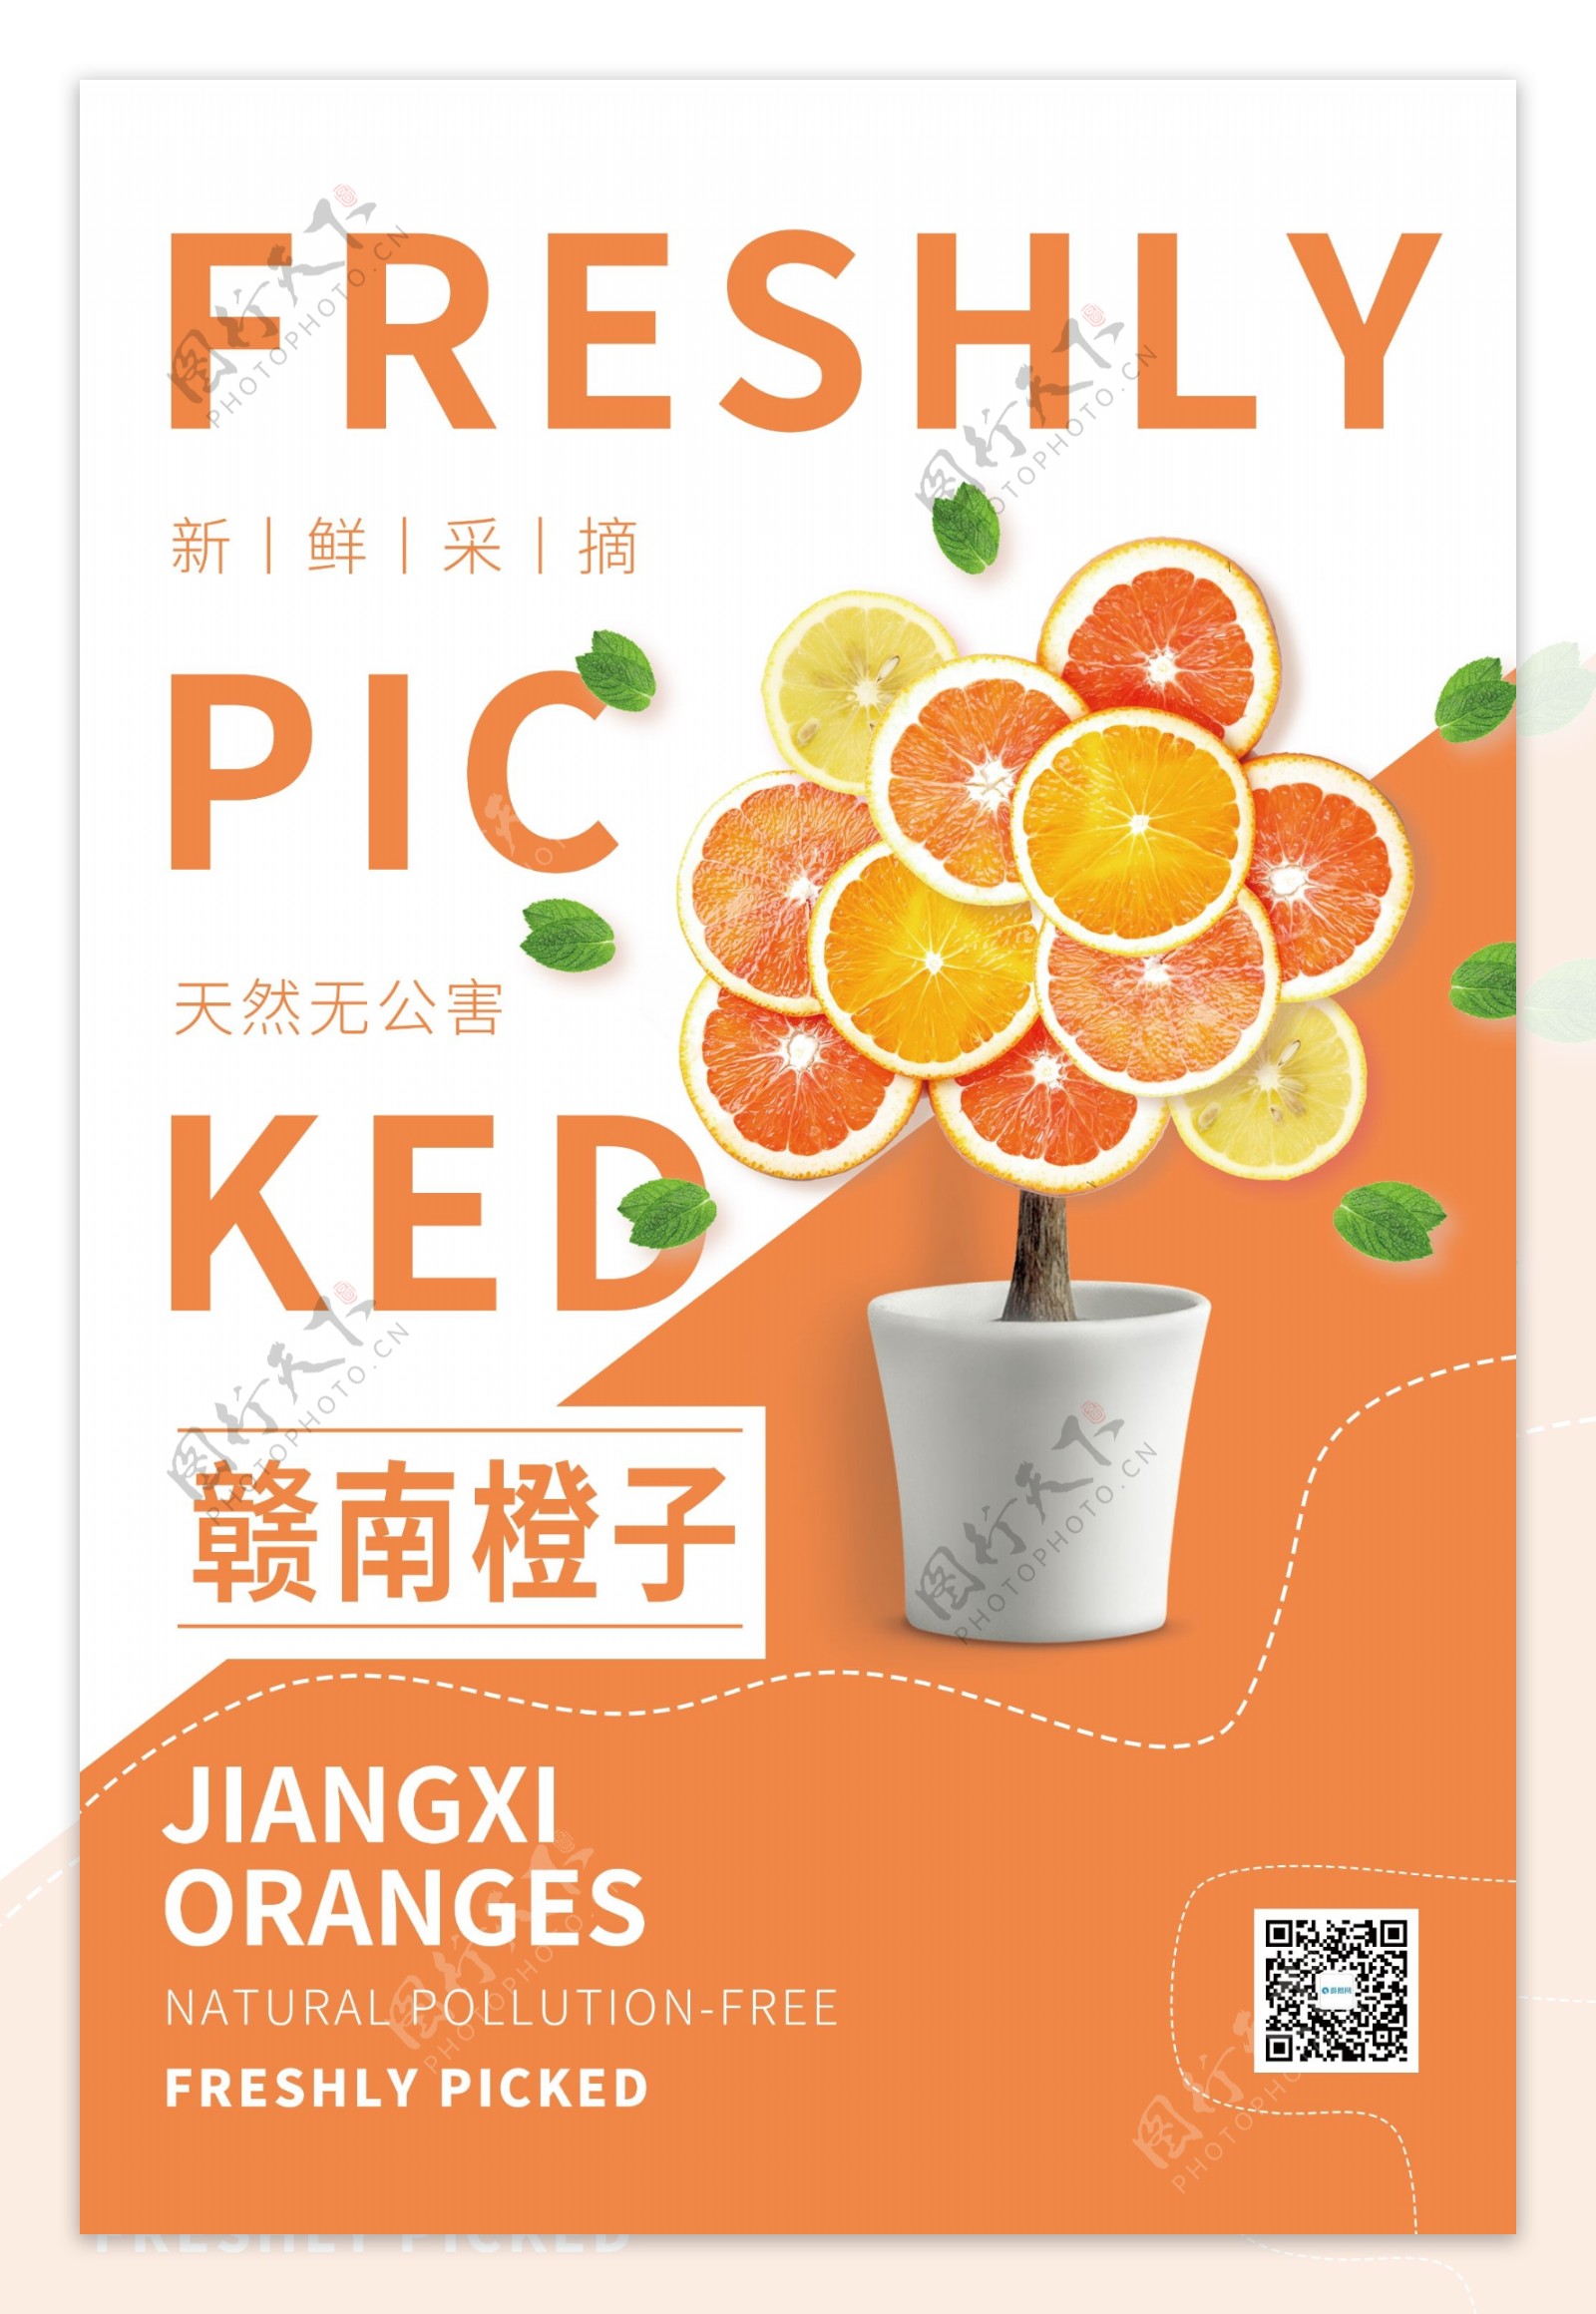 赣南橙子水果促销宣传海报